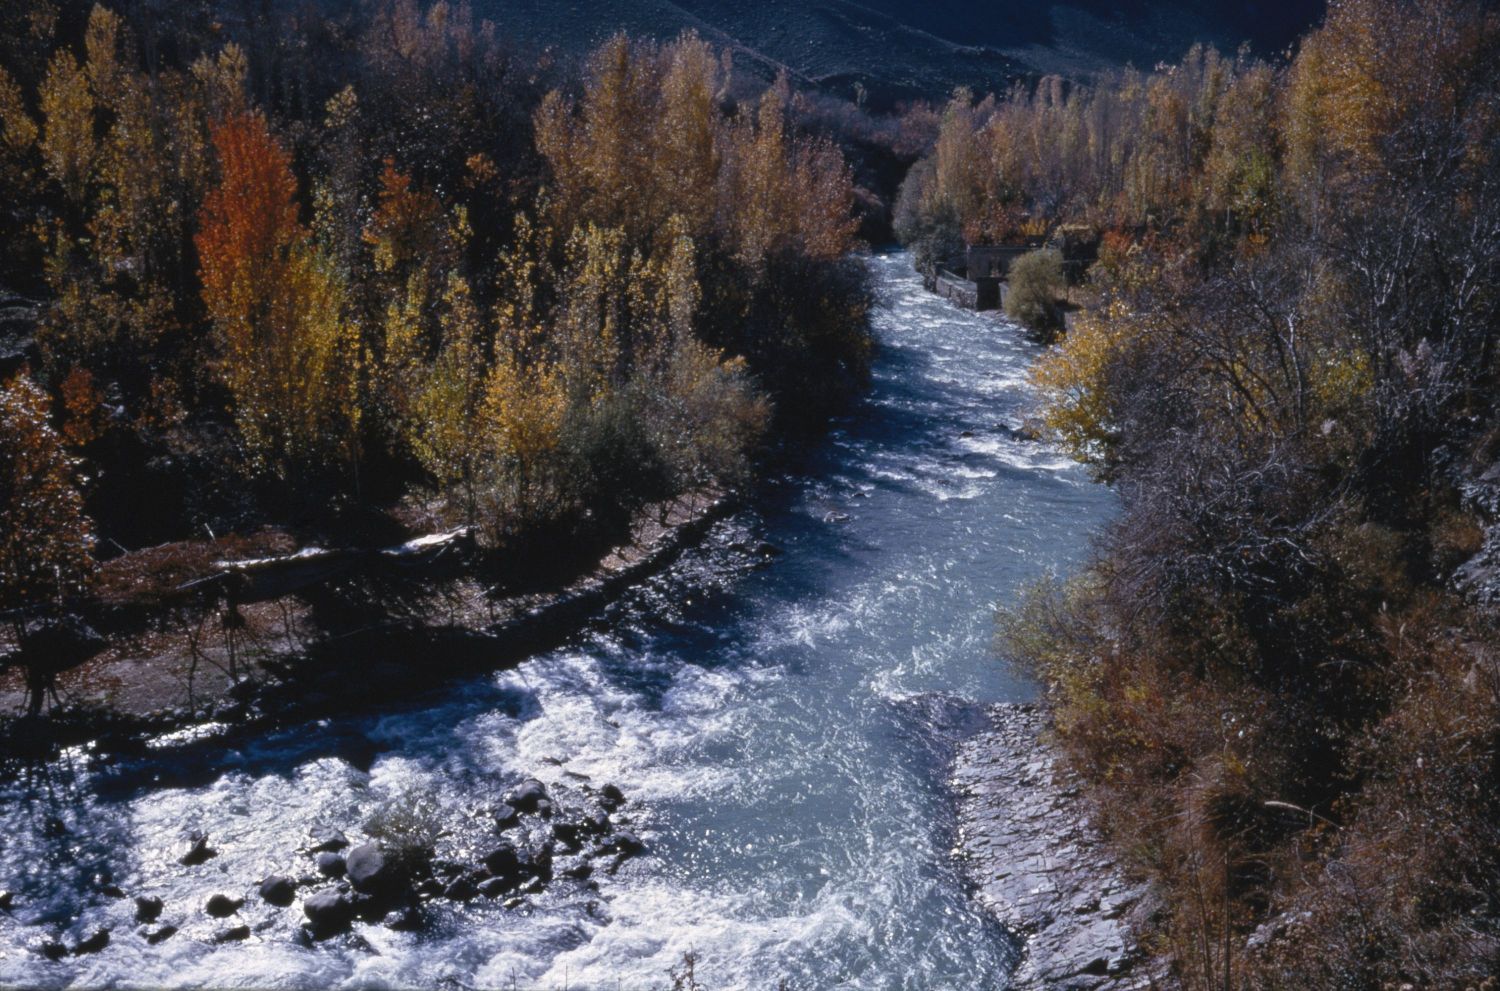 View of river below Karaj Dam, Iran.